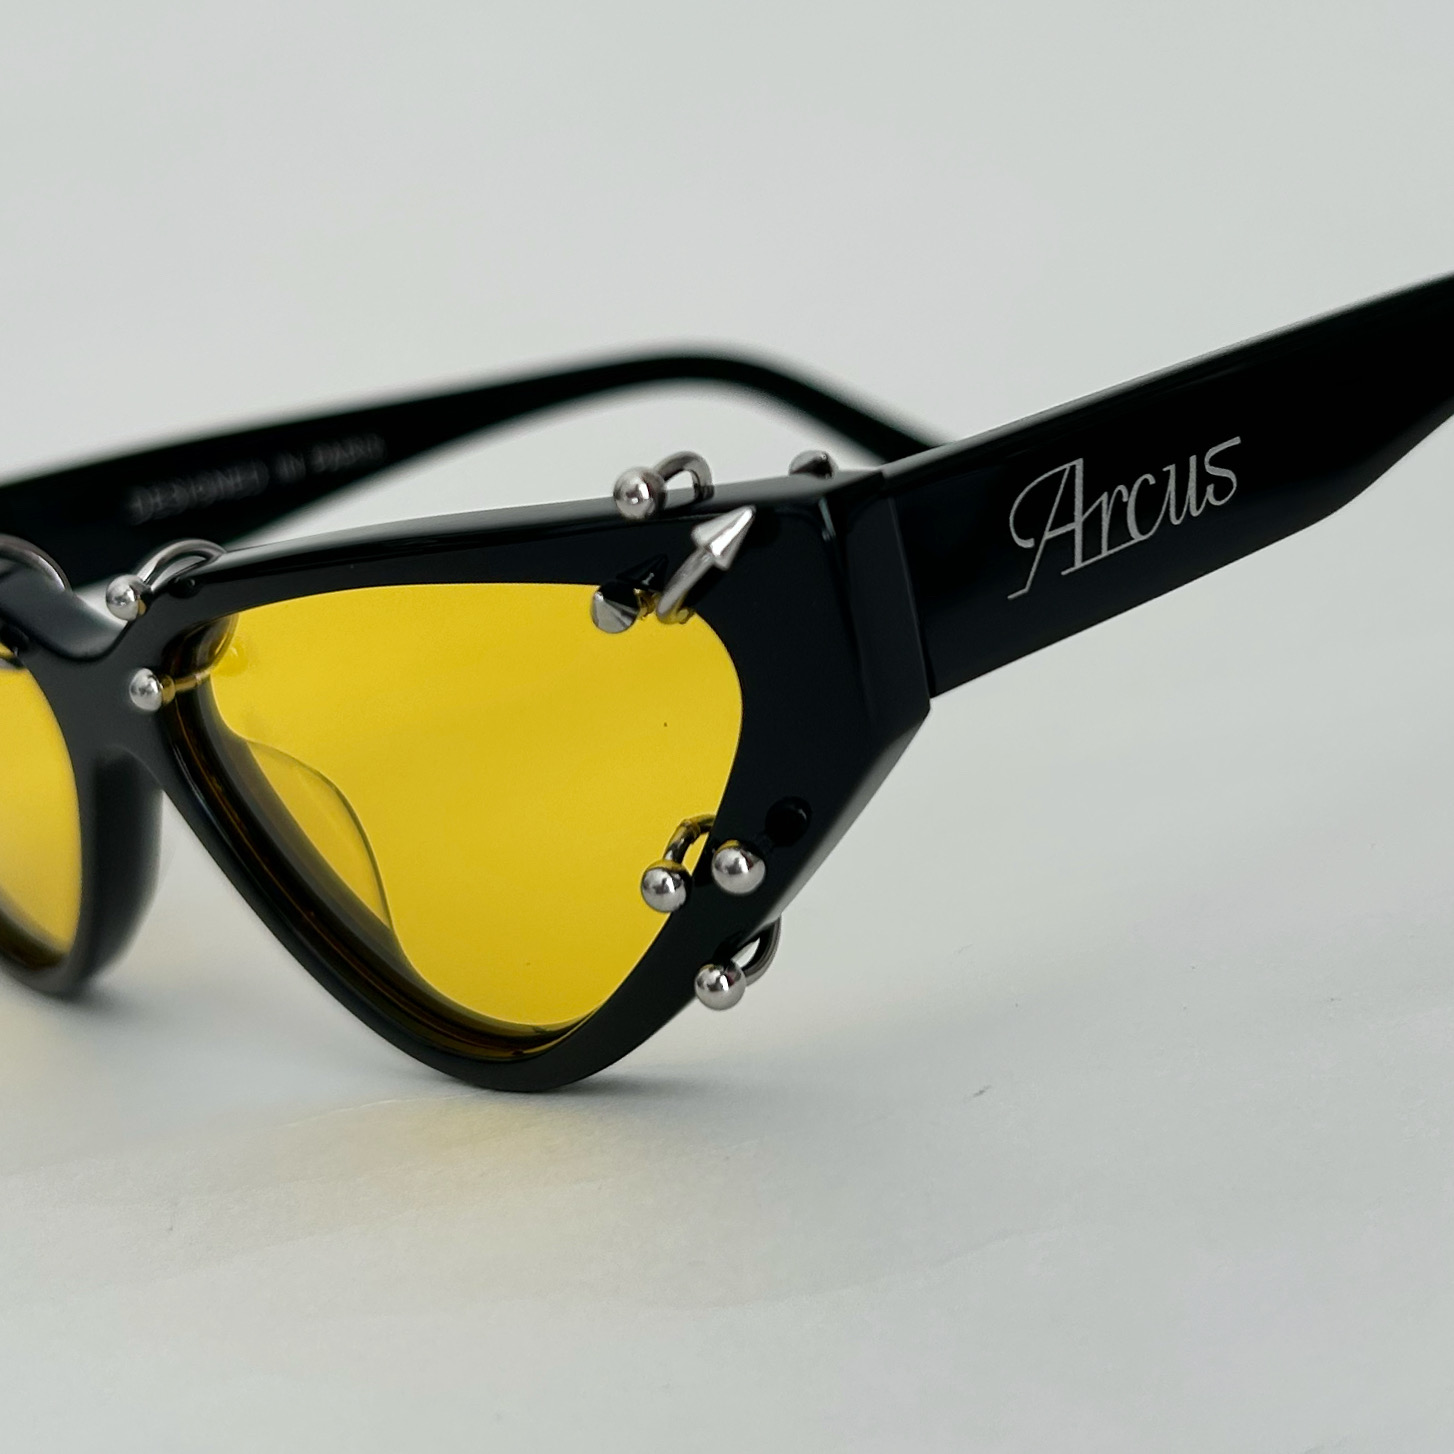 ARCUS lunettes de soleil upcycling